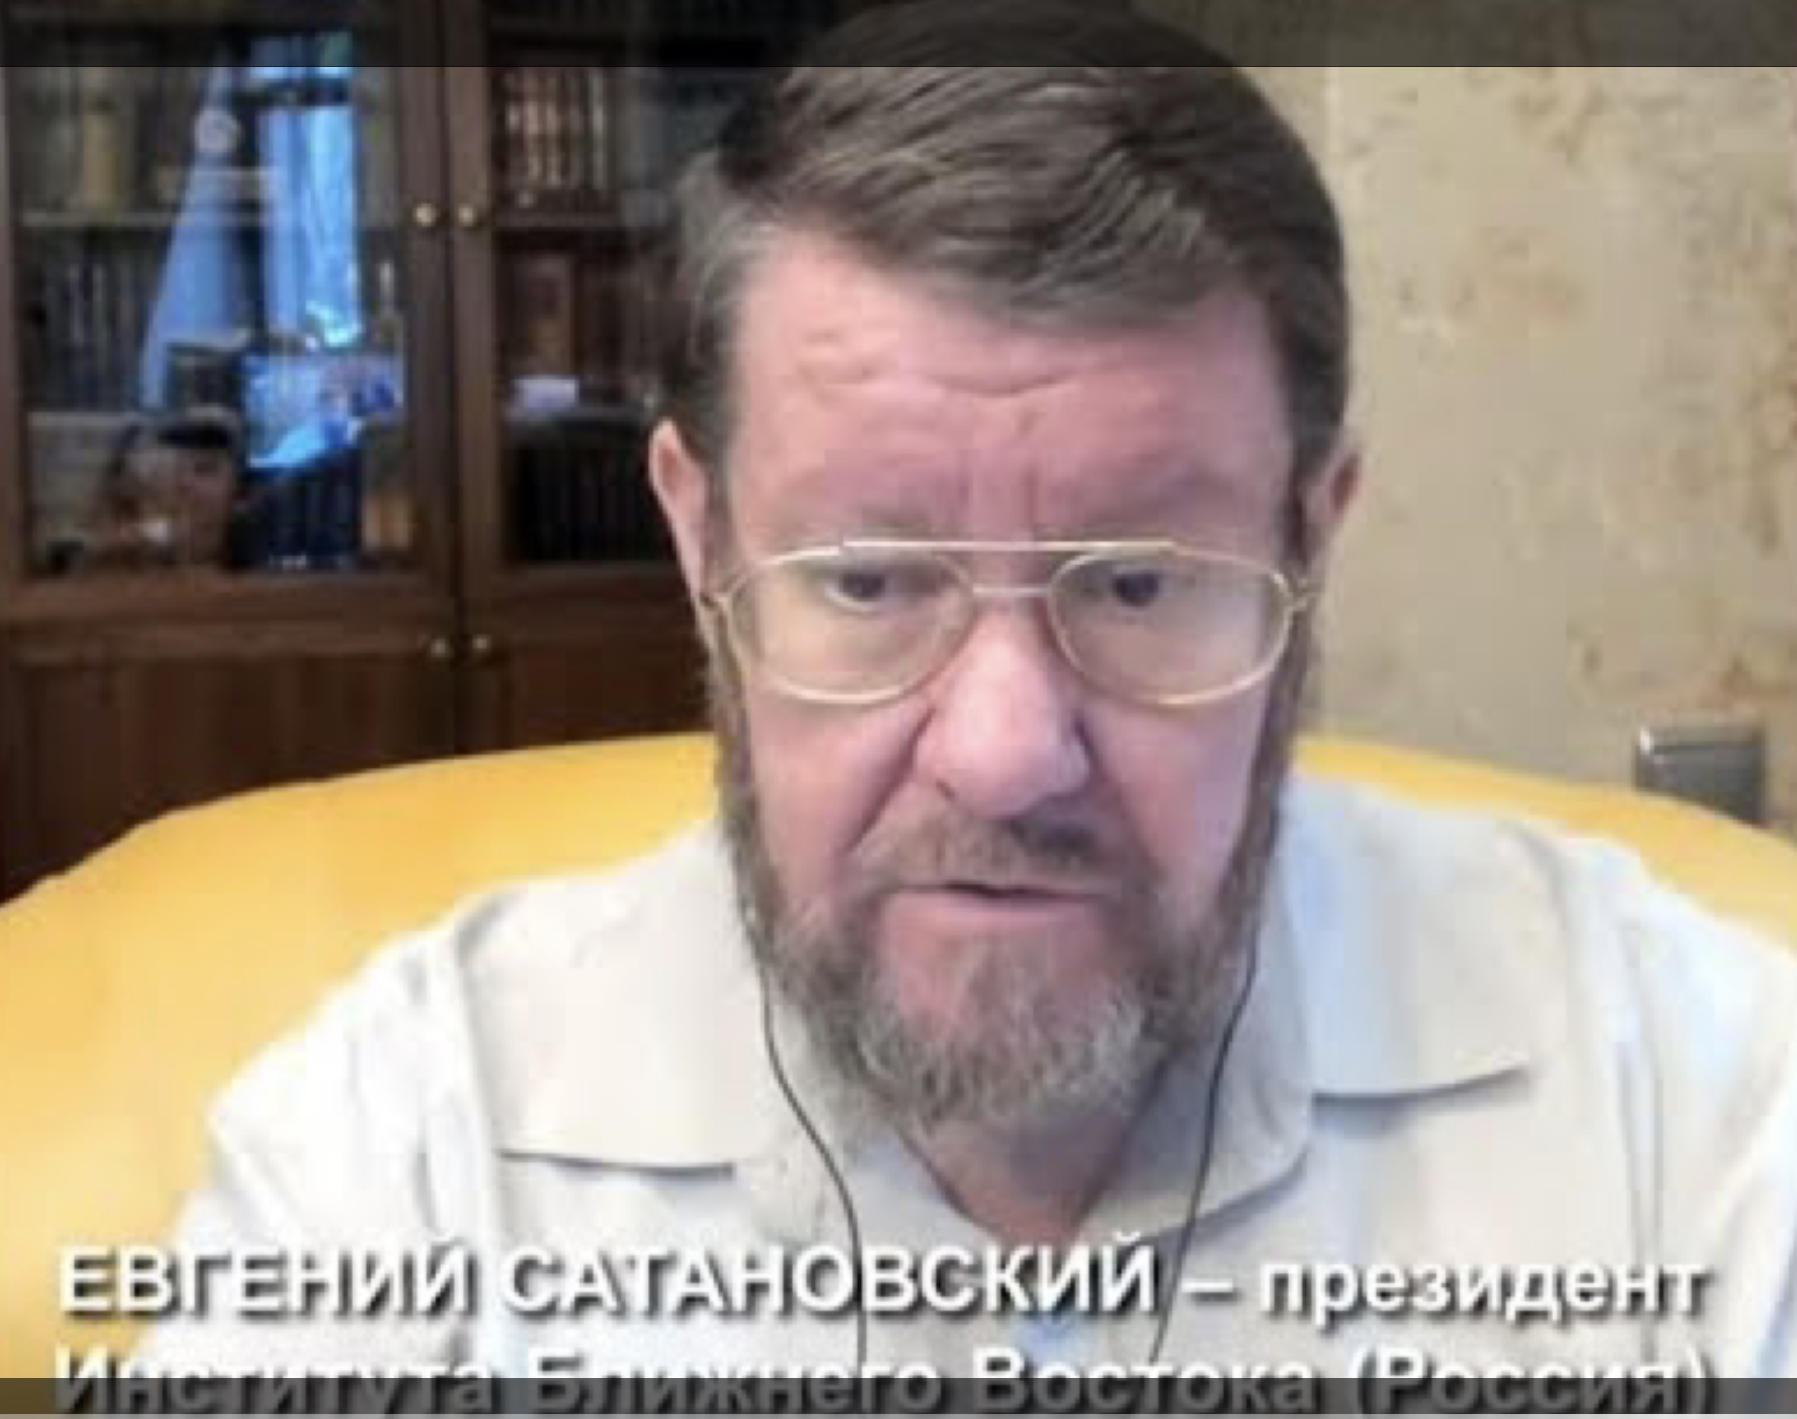 Е.Сатановский: Медведьев уверен, что станет «наследником» Путина и опять станет президентом.